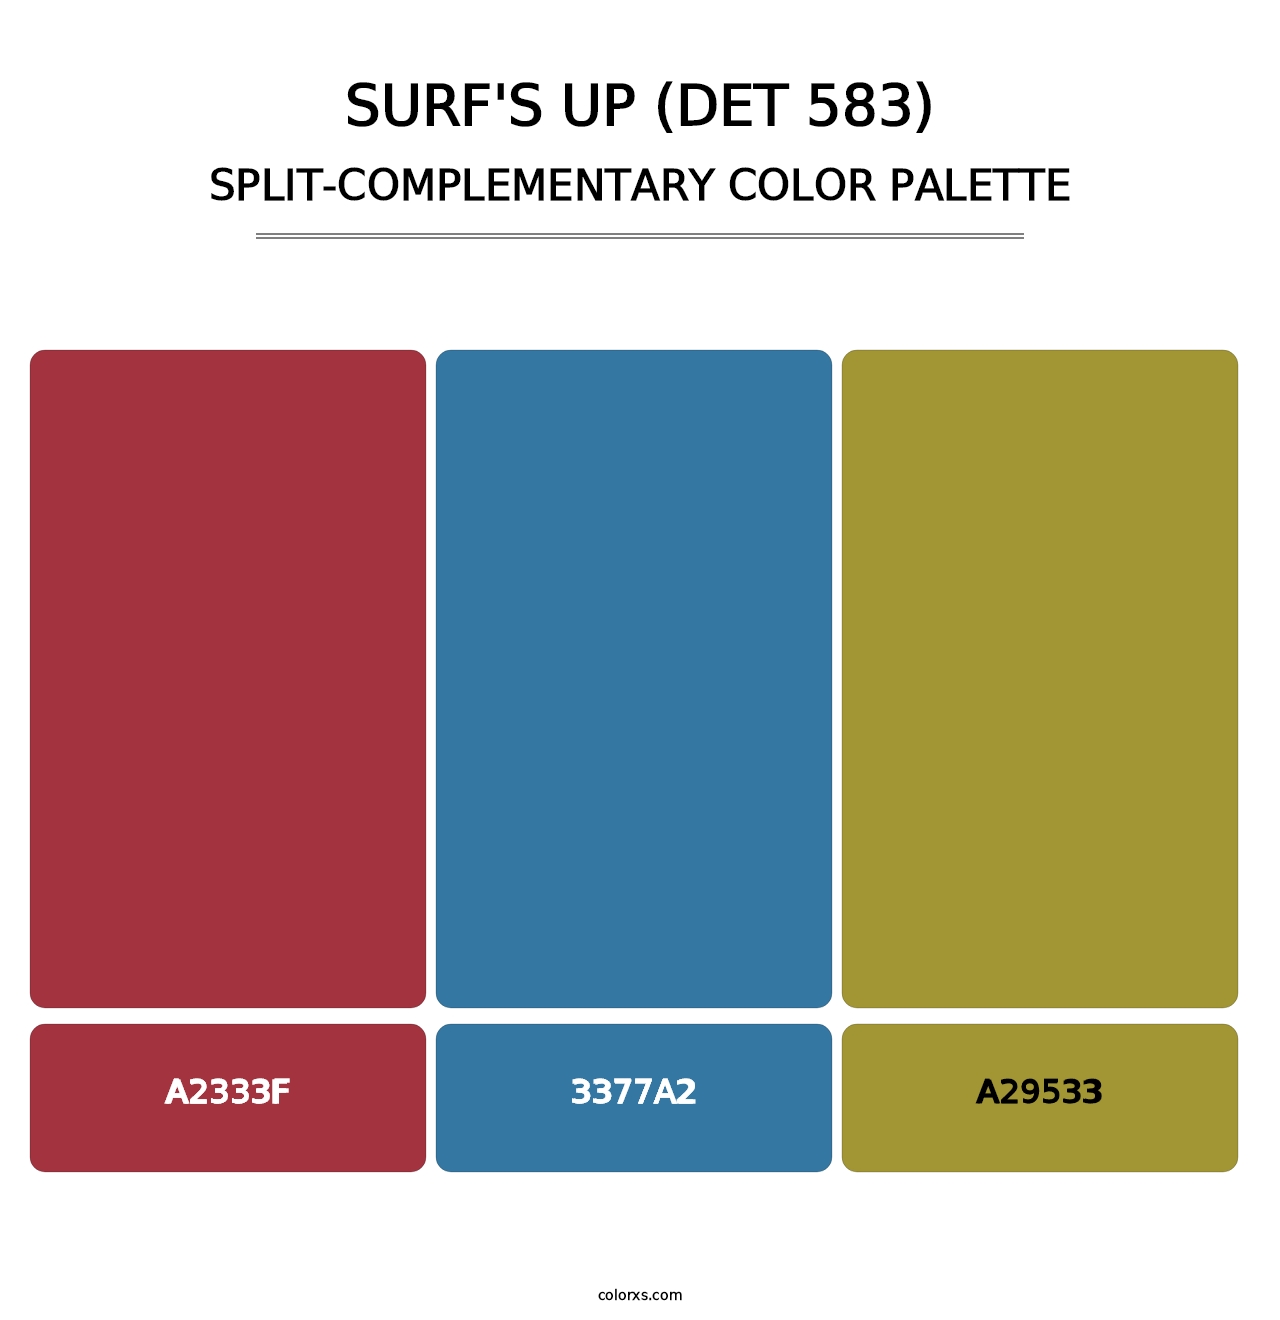 Surf's Up (DET 583) - Split-Complementary Color Palette